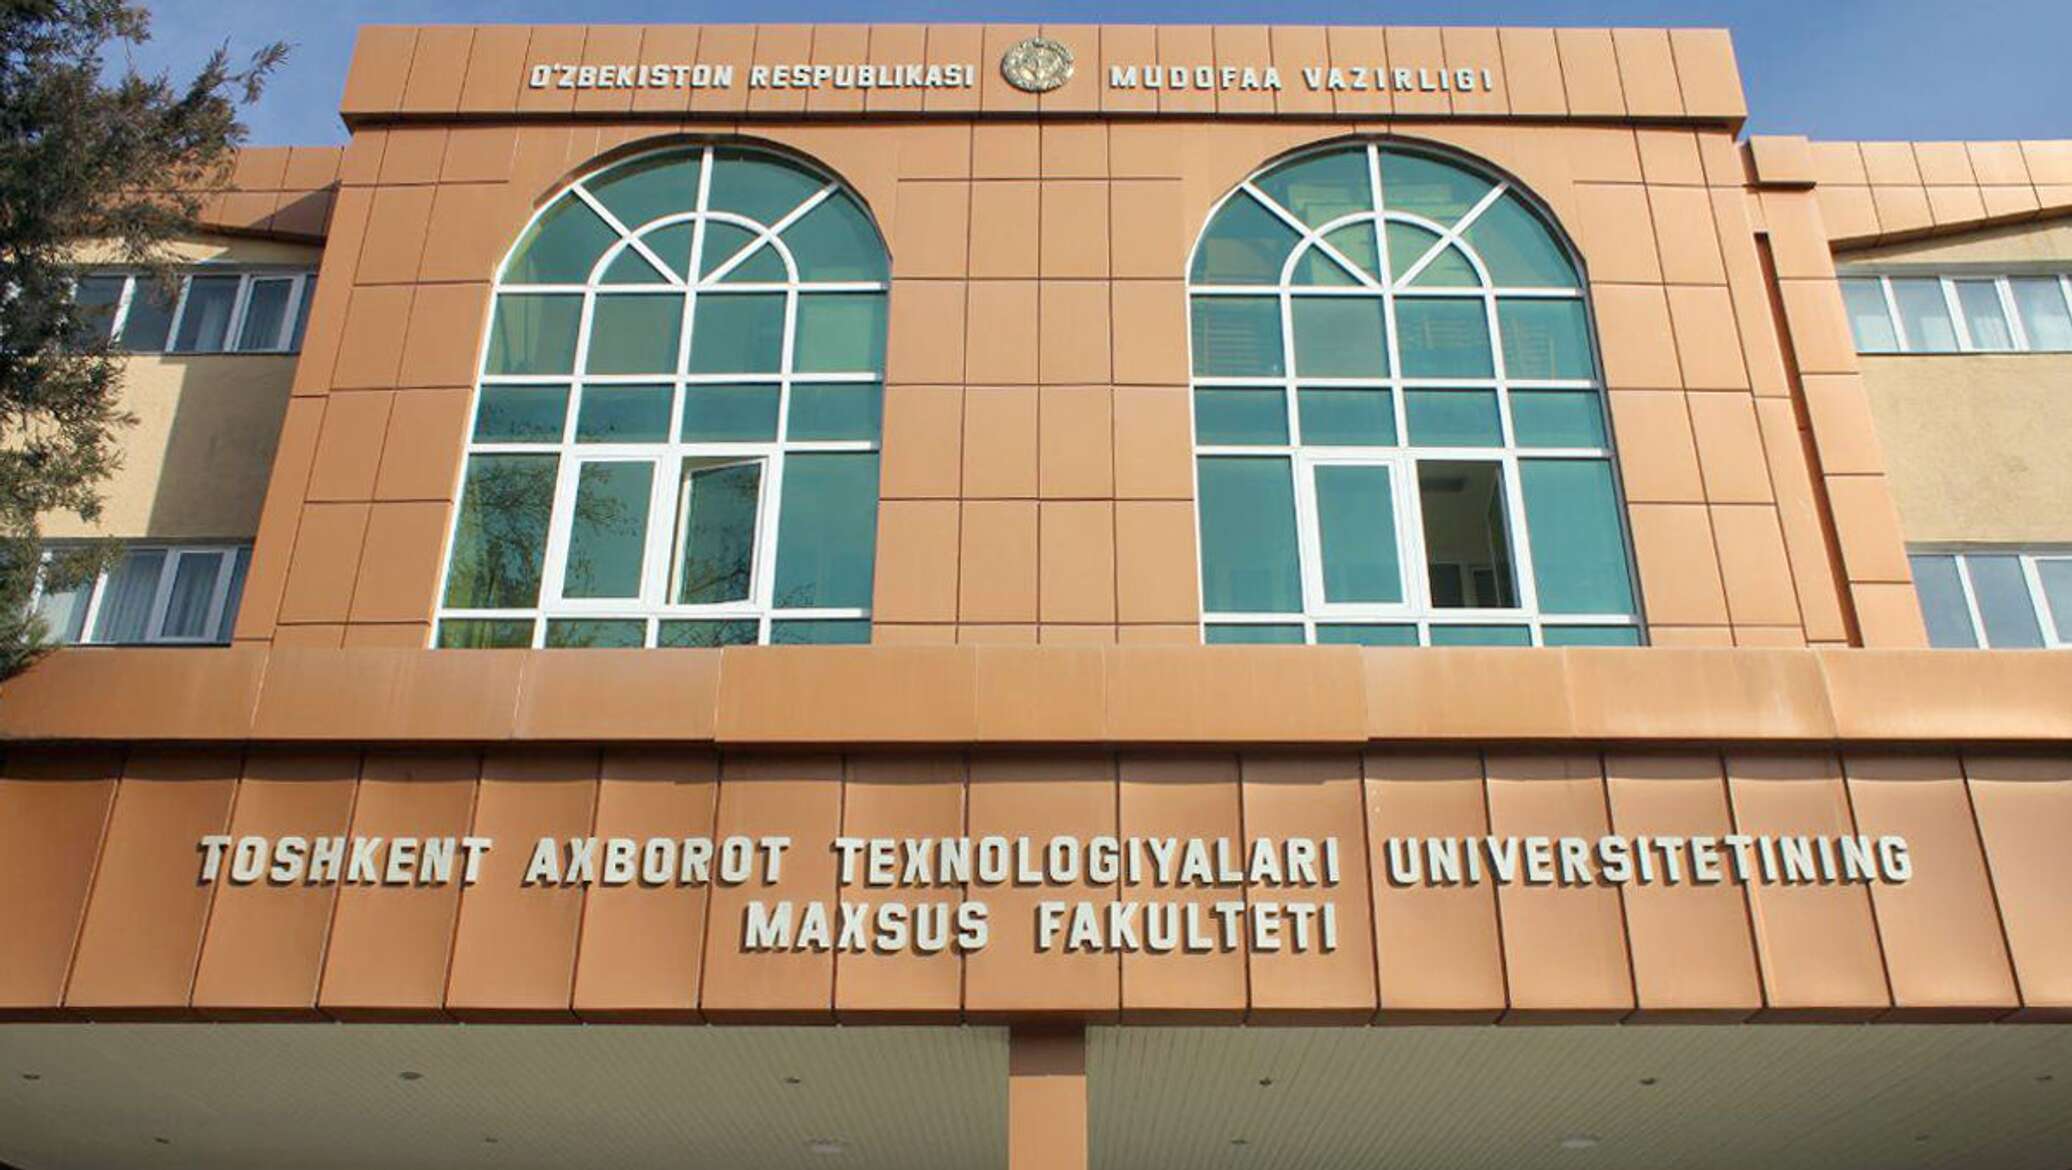 Институт связи в Узбекистане